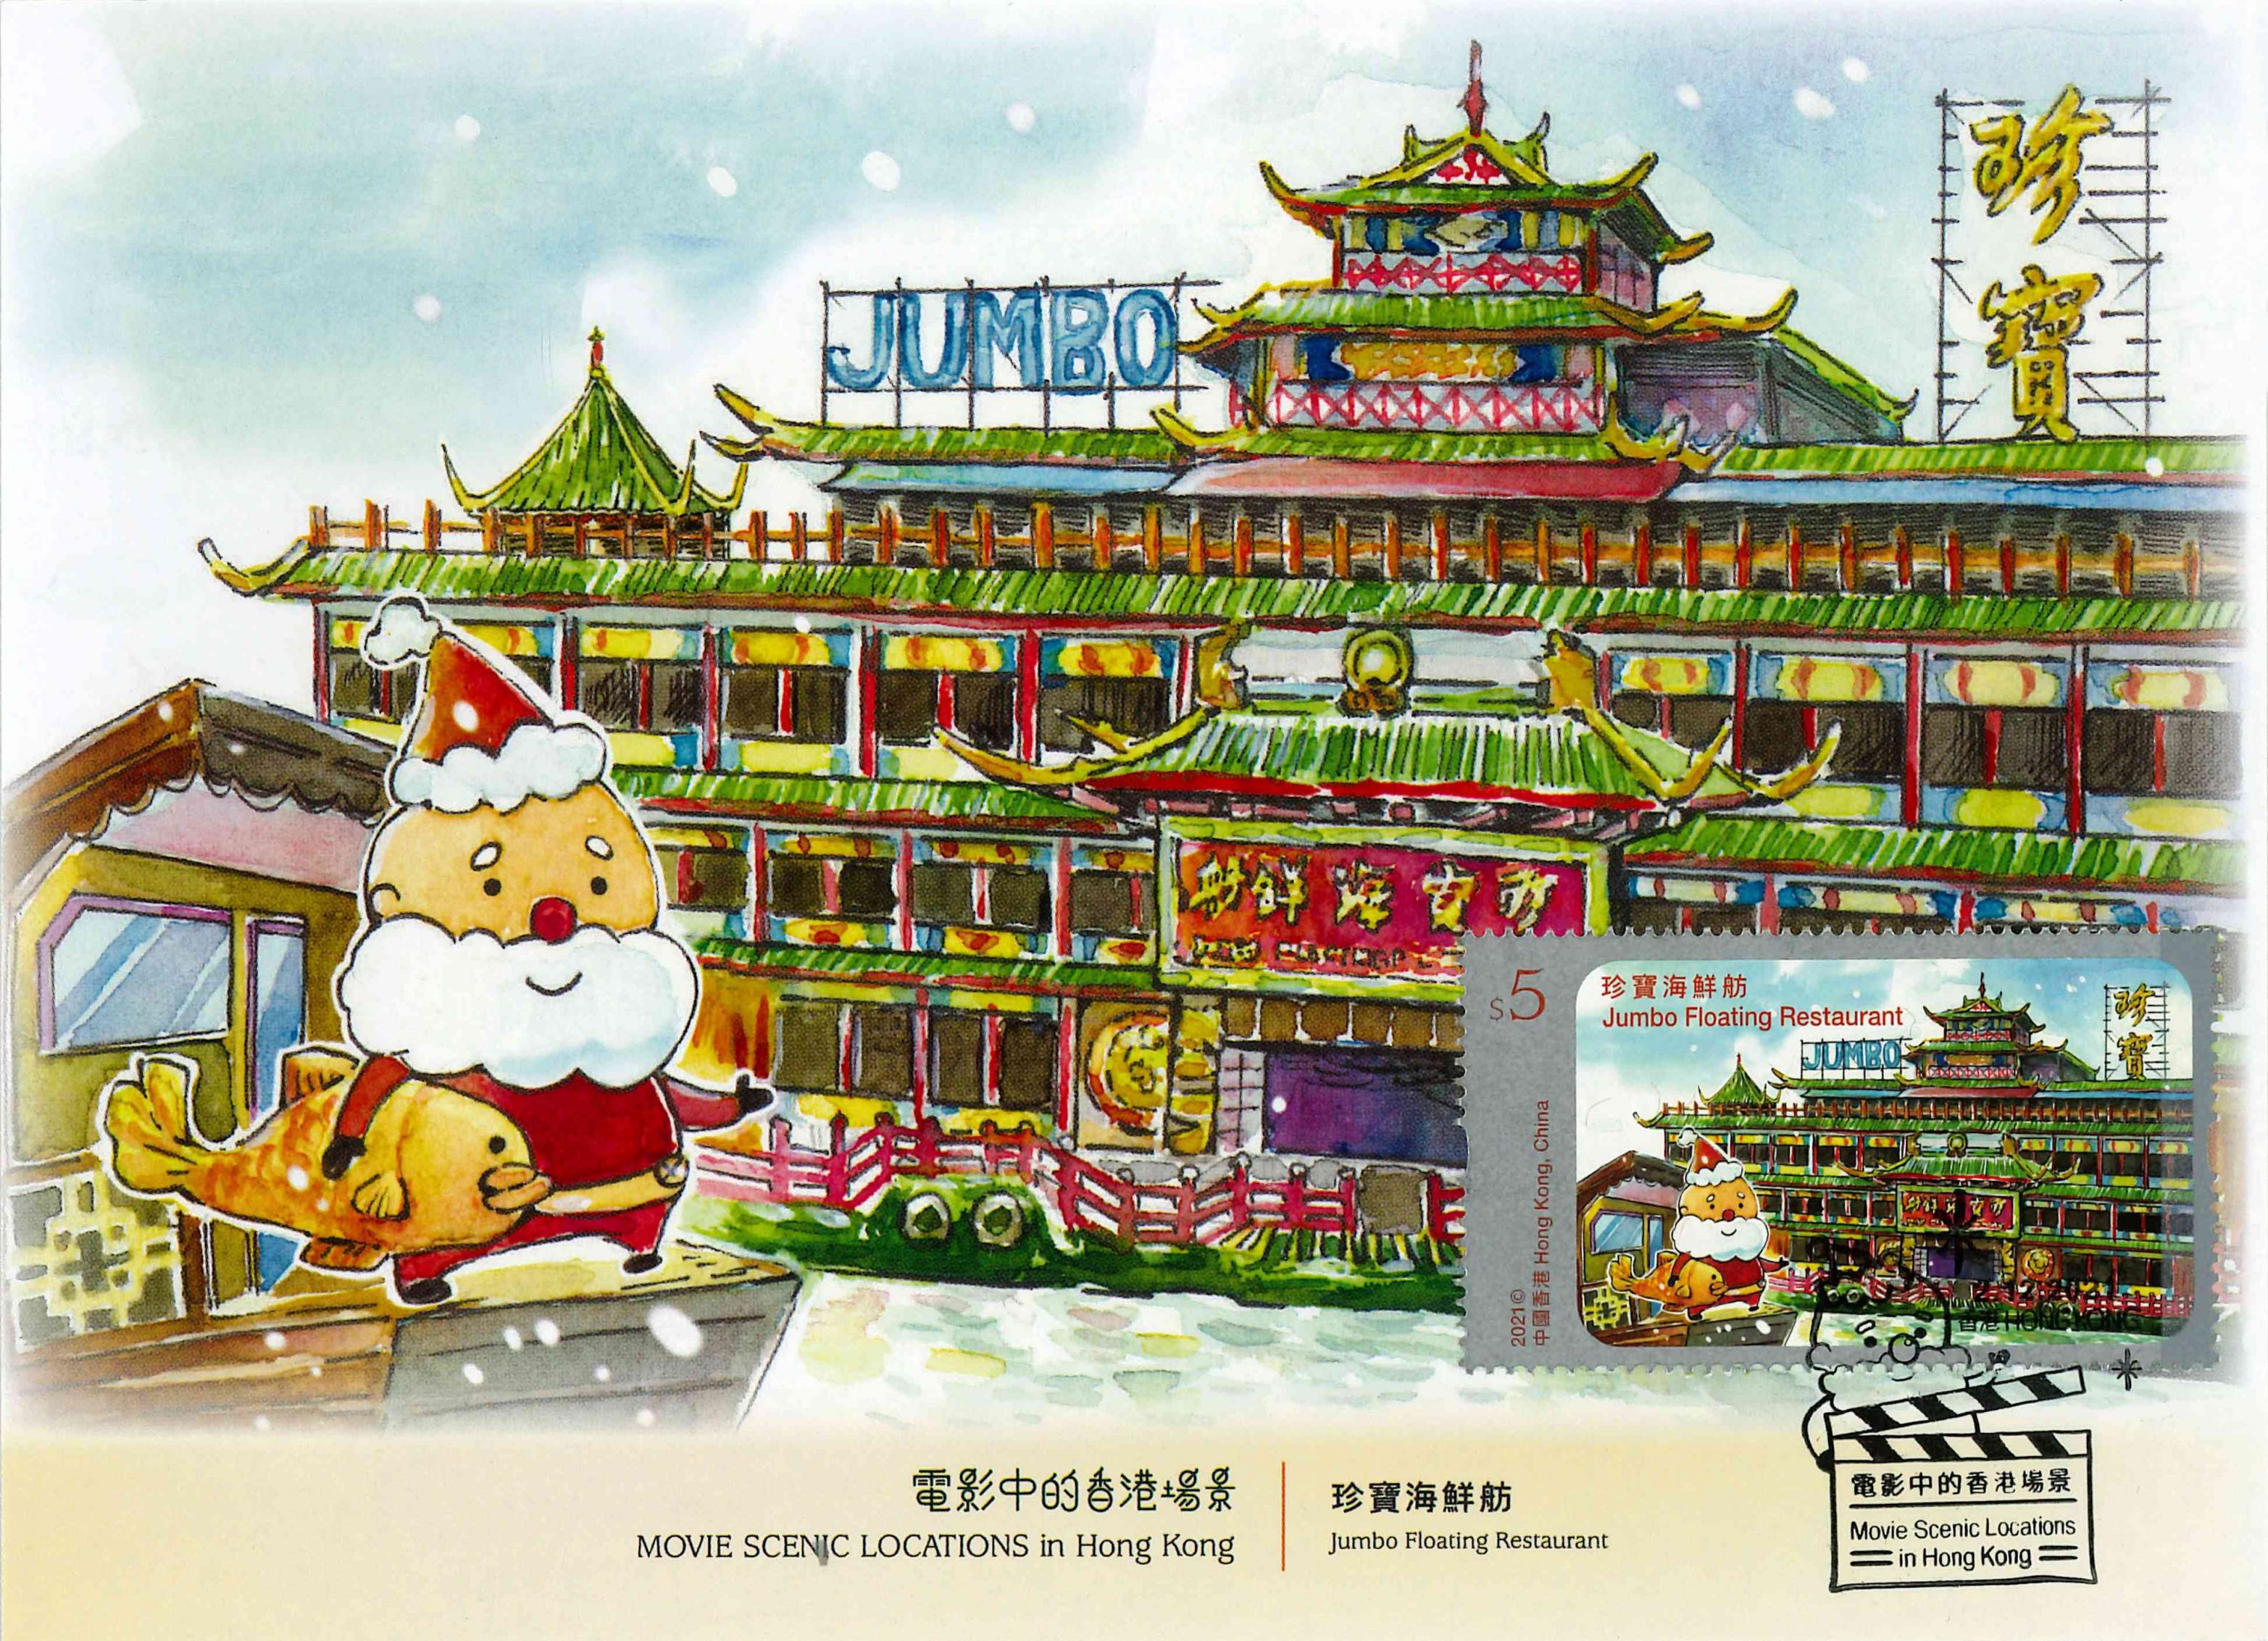 去年底發行的「電影中的香港場景」特別郵票亦以珍寶海鮮舫為其中一枚郵票的主題。（蕭郁鵬提供）